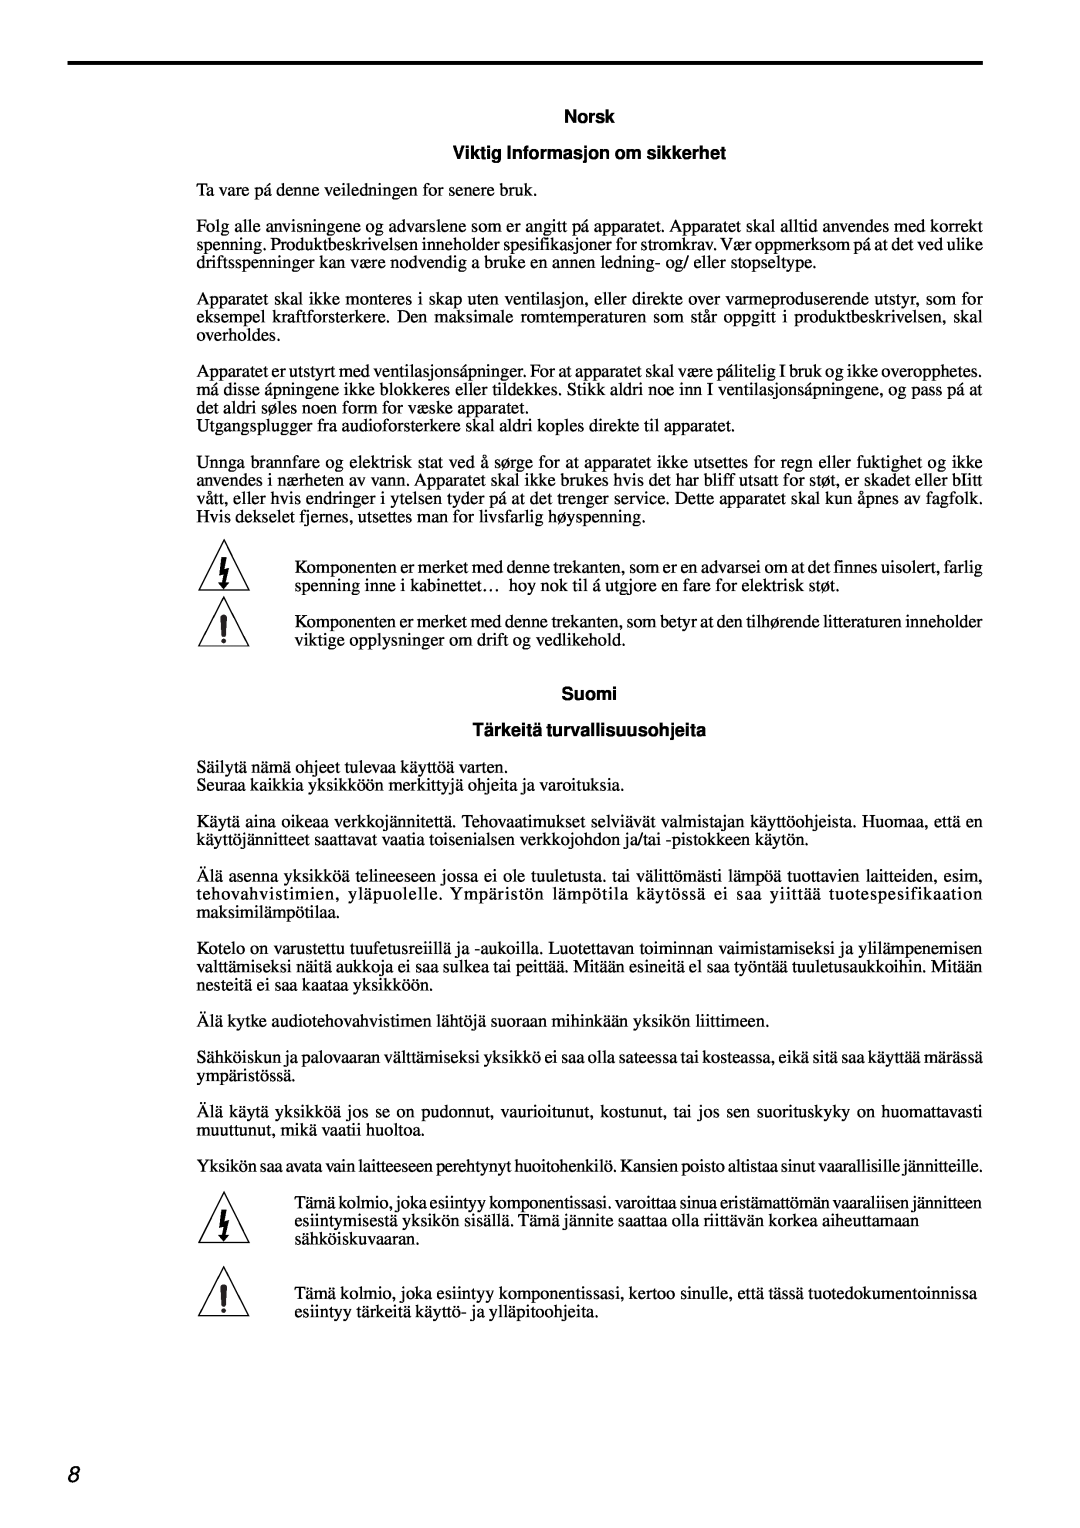 Parasound AVC-2500 owner manual Norsk Viktig Informasjon om sikkerhet, Suomi Tärkeitä turvallisuusohjeita 